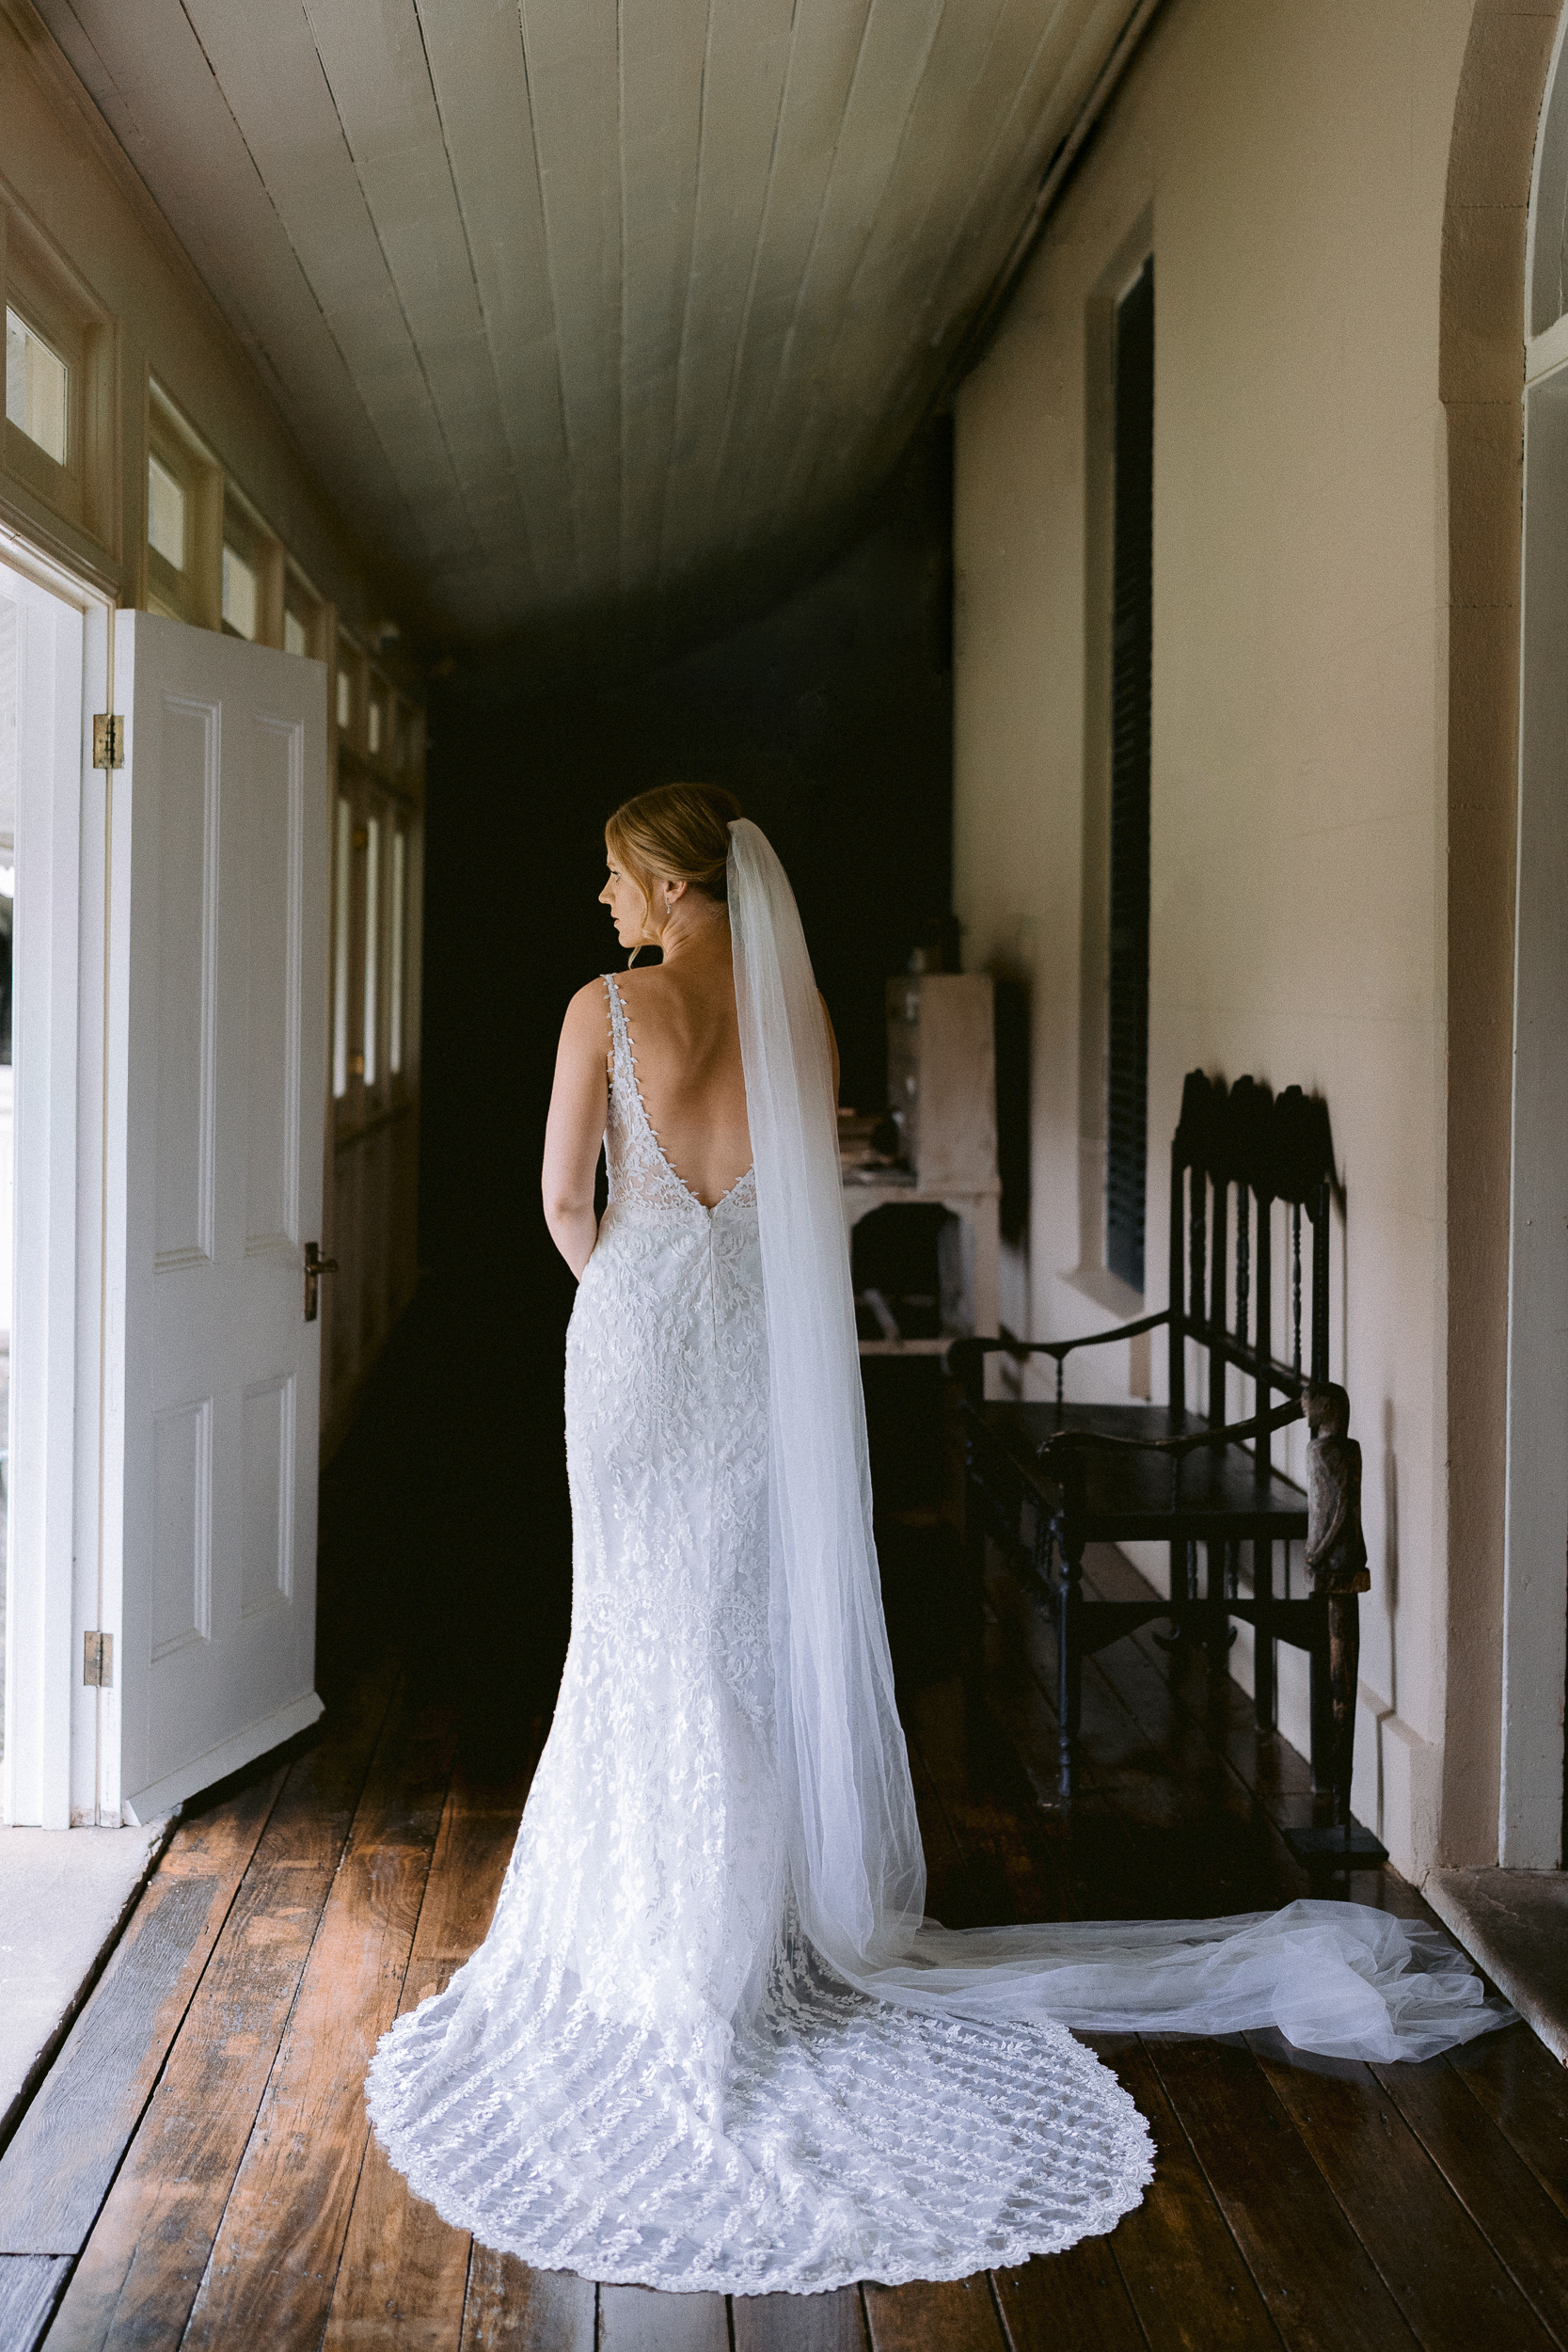 Bride at Wallalong House